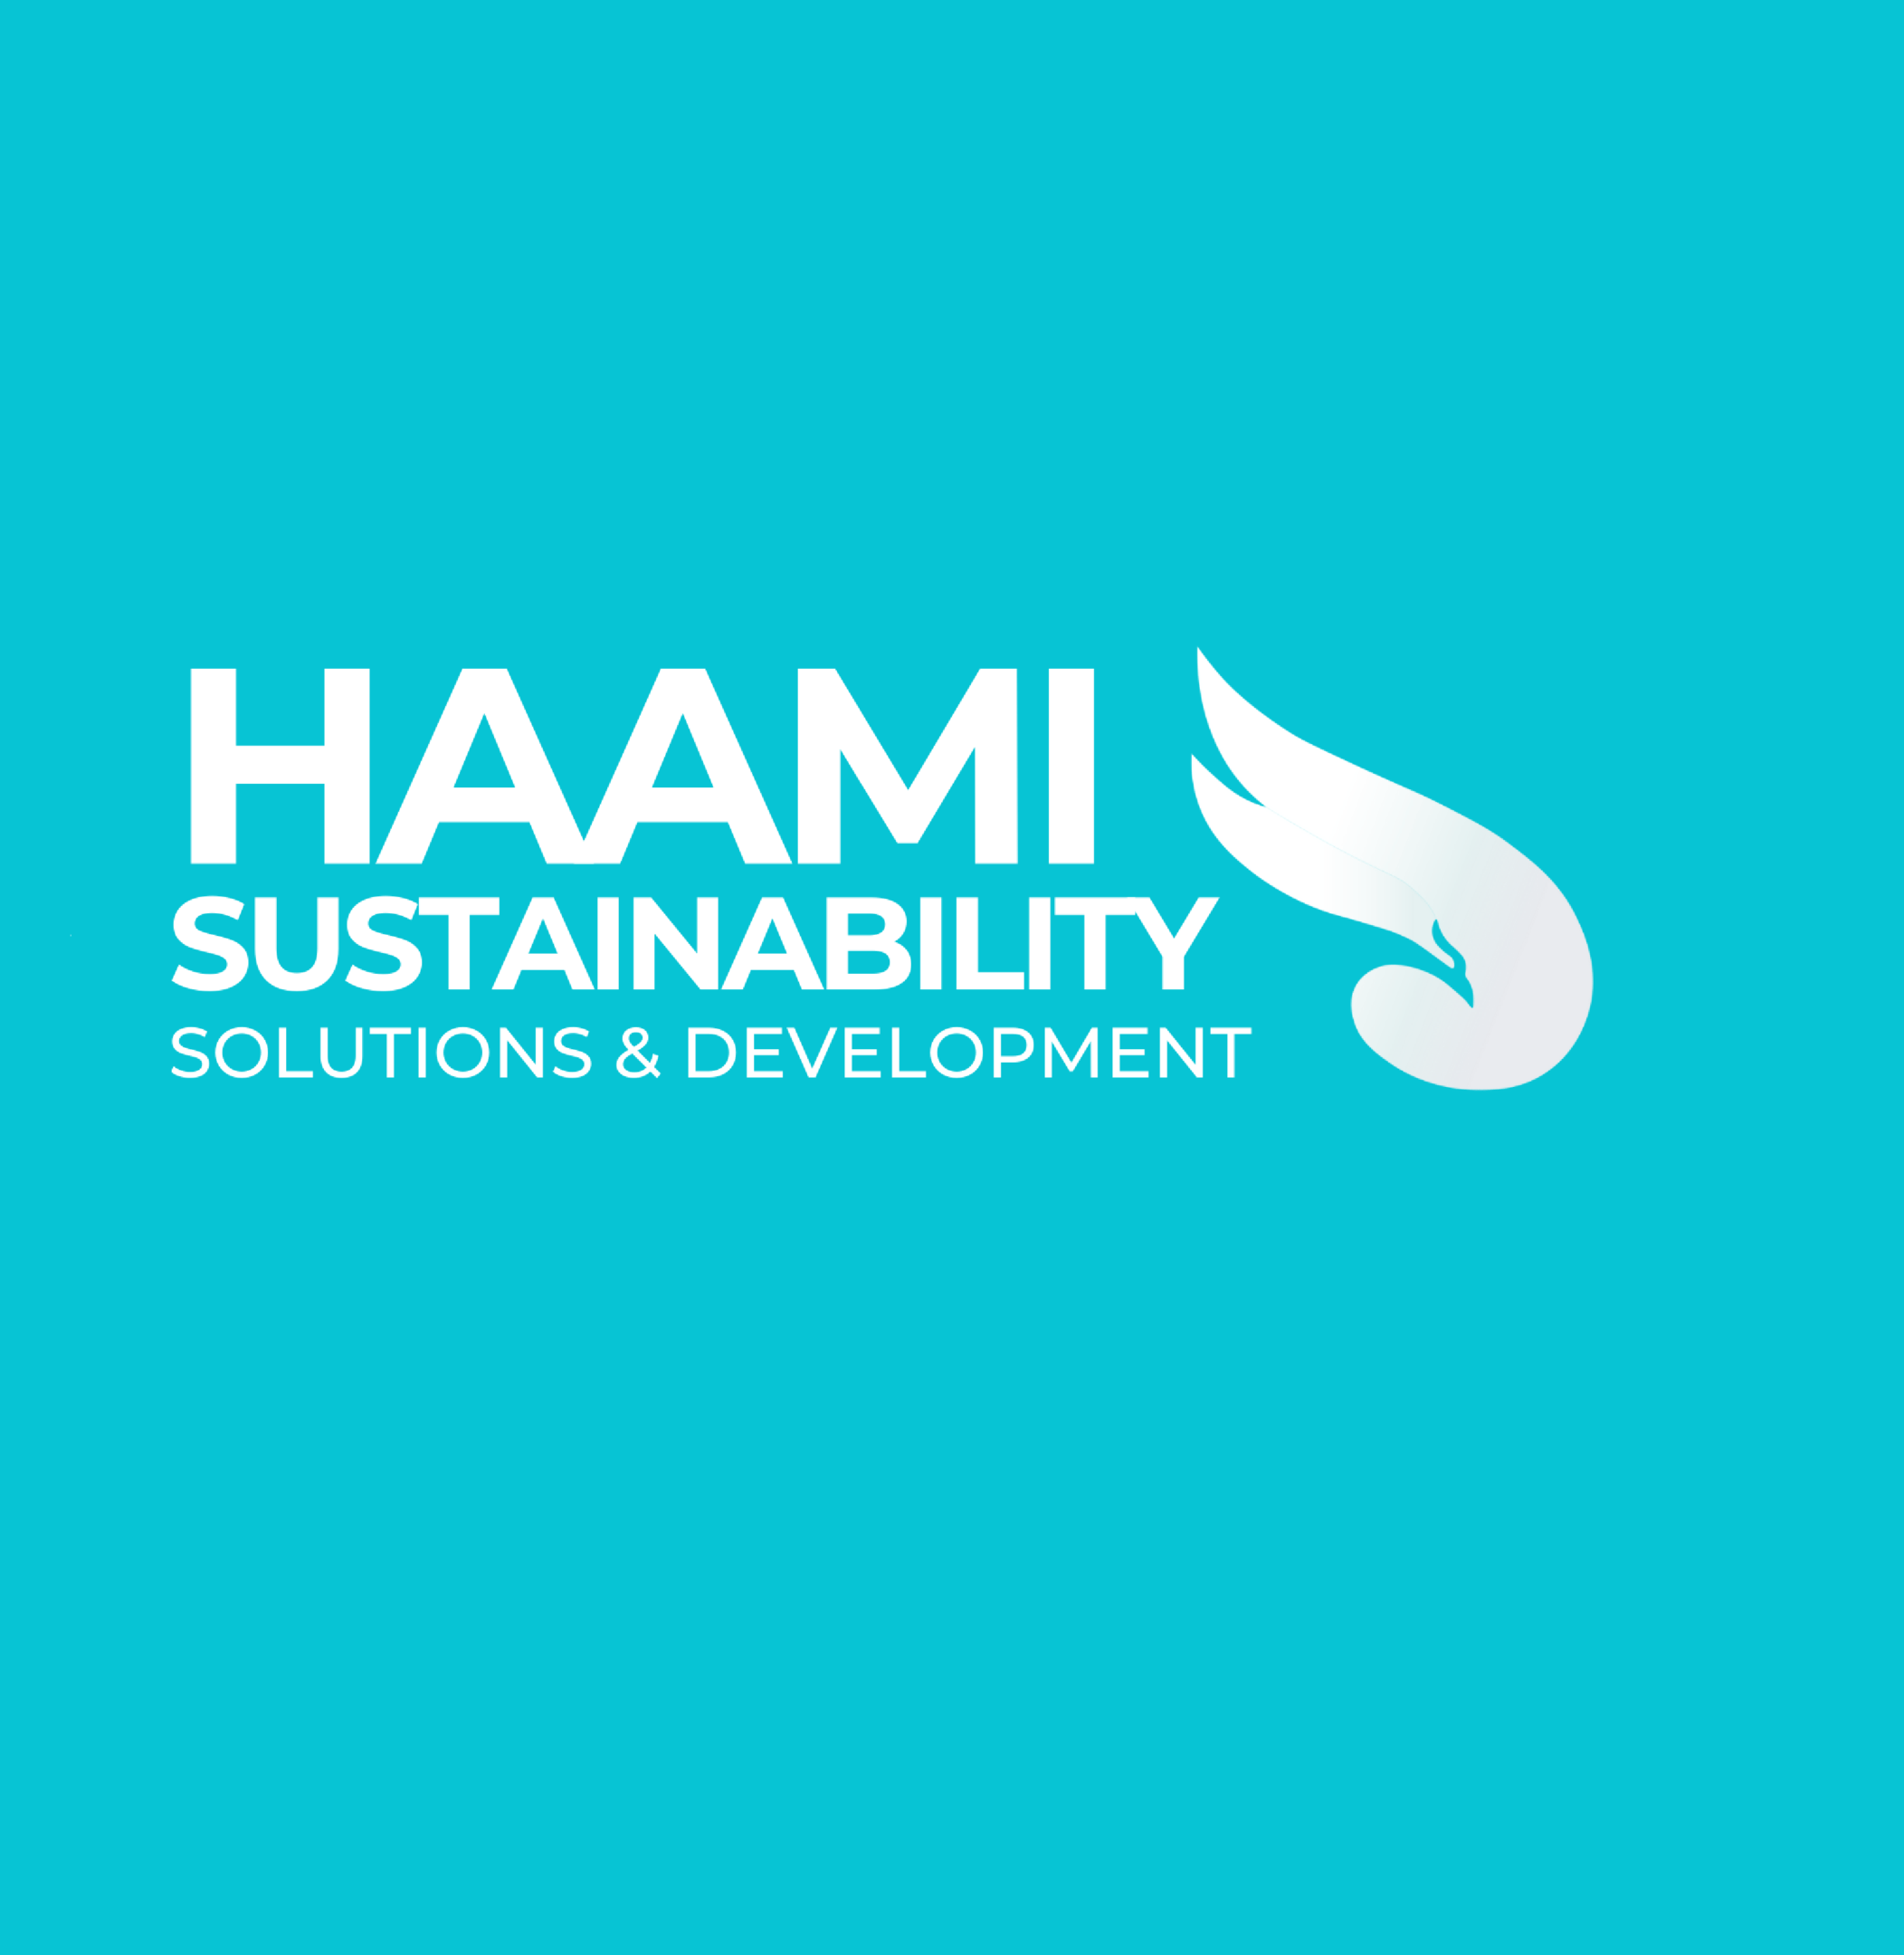 HAAMI-SUSTAINABILITY